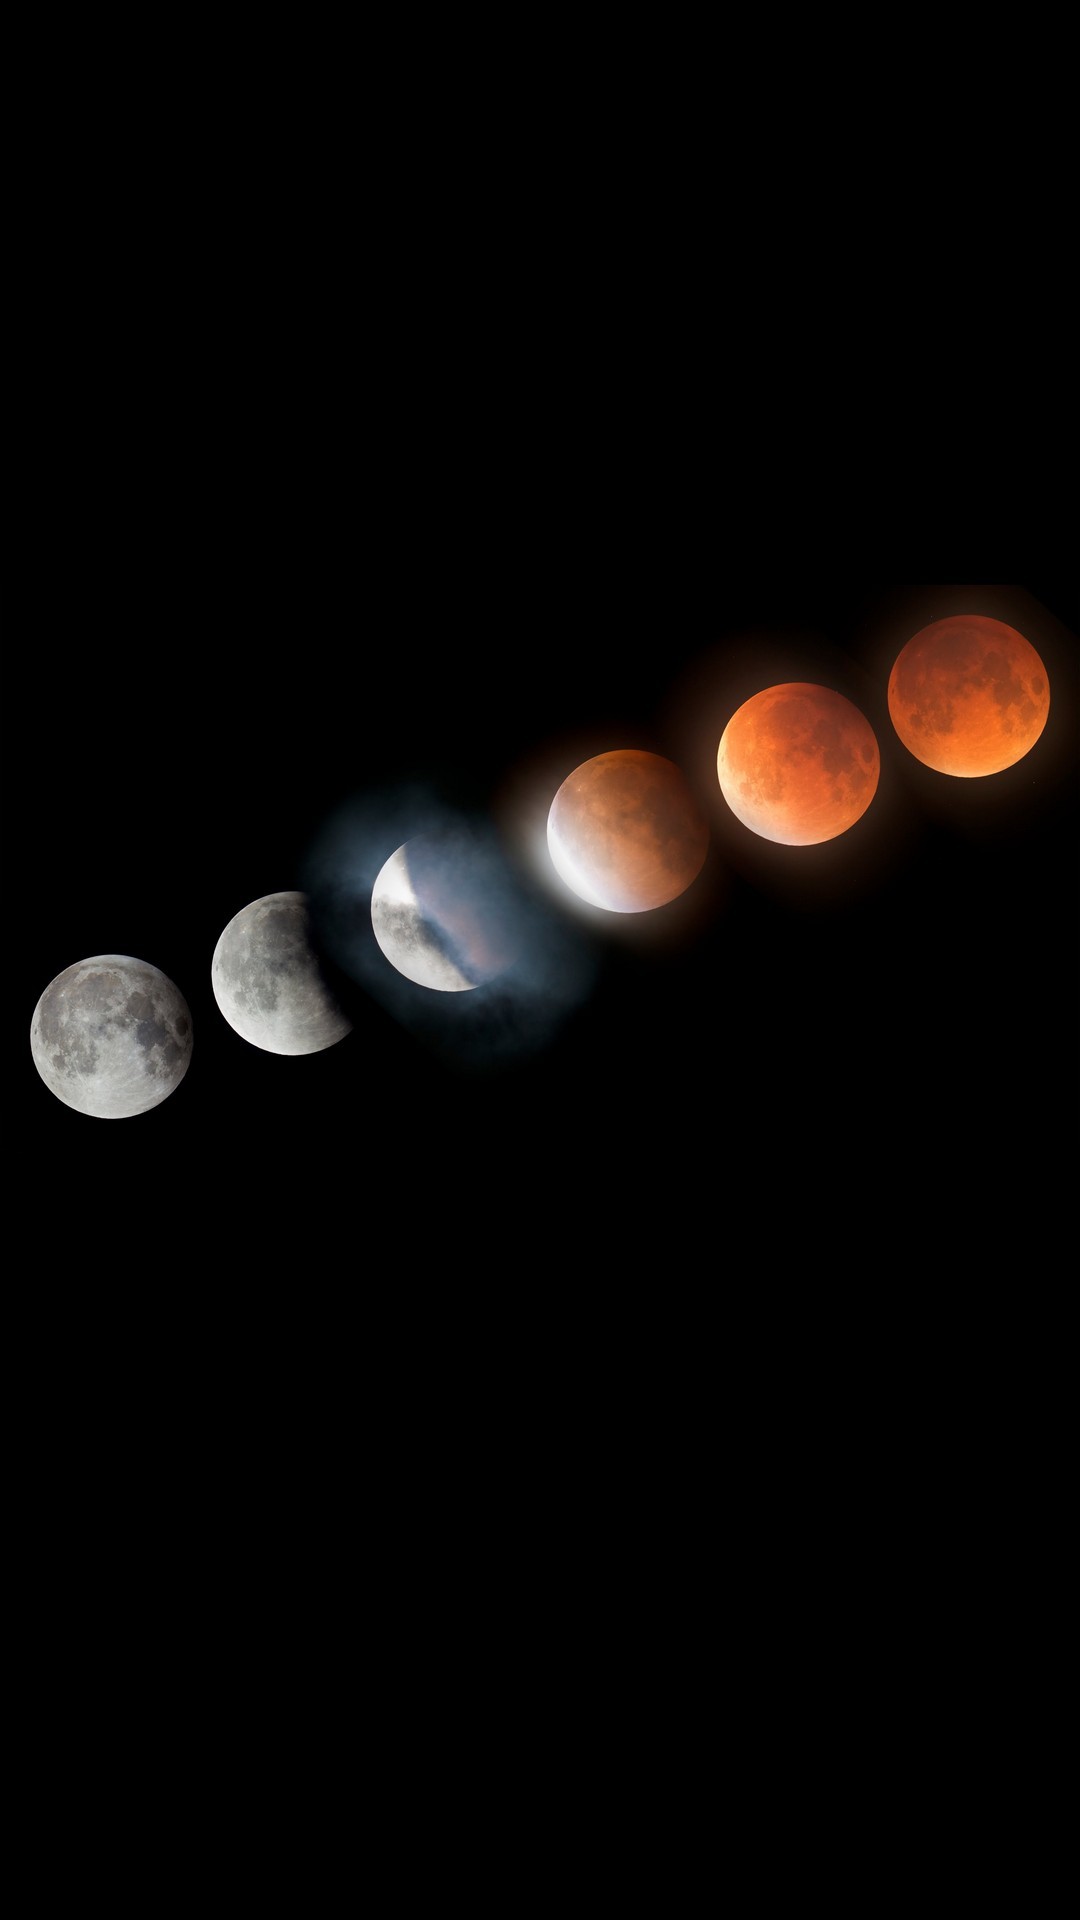 1080x1920 iPhone X Wallpaper Super Blood Moon Lunar Eclipse resolution 